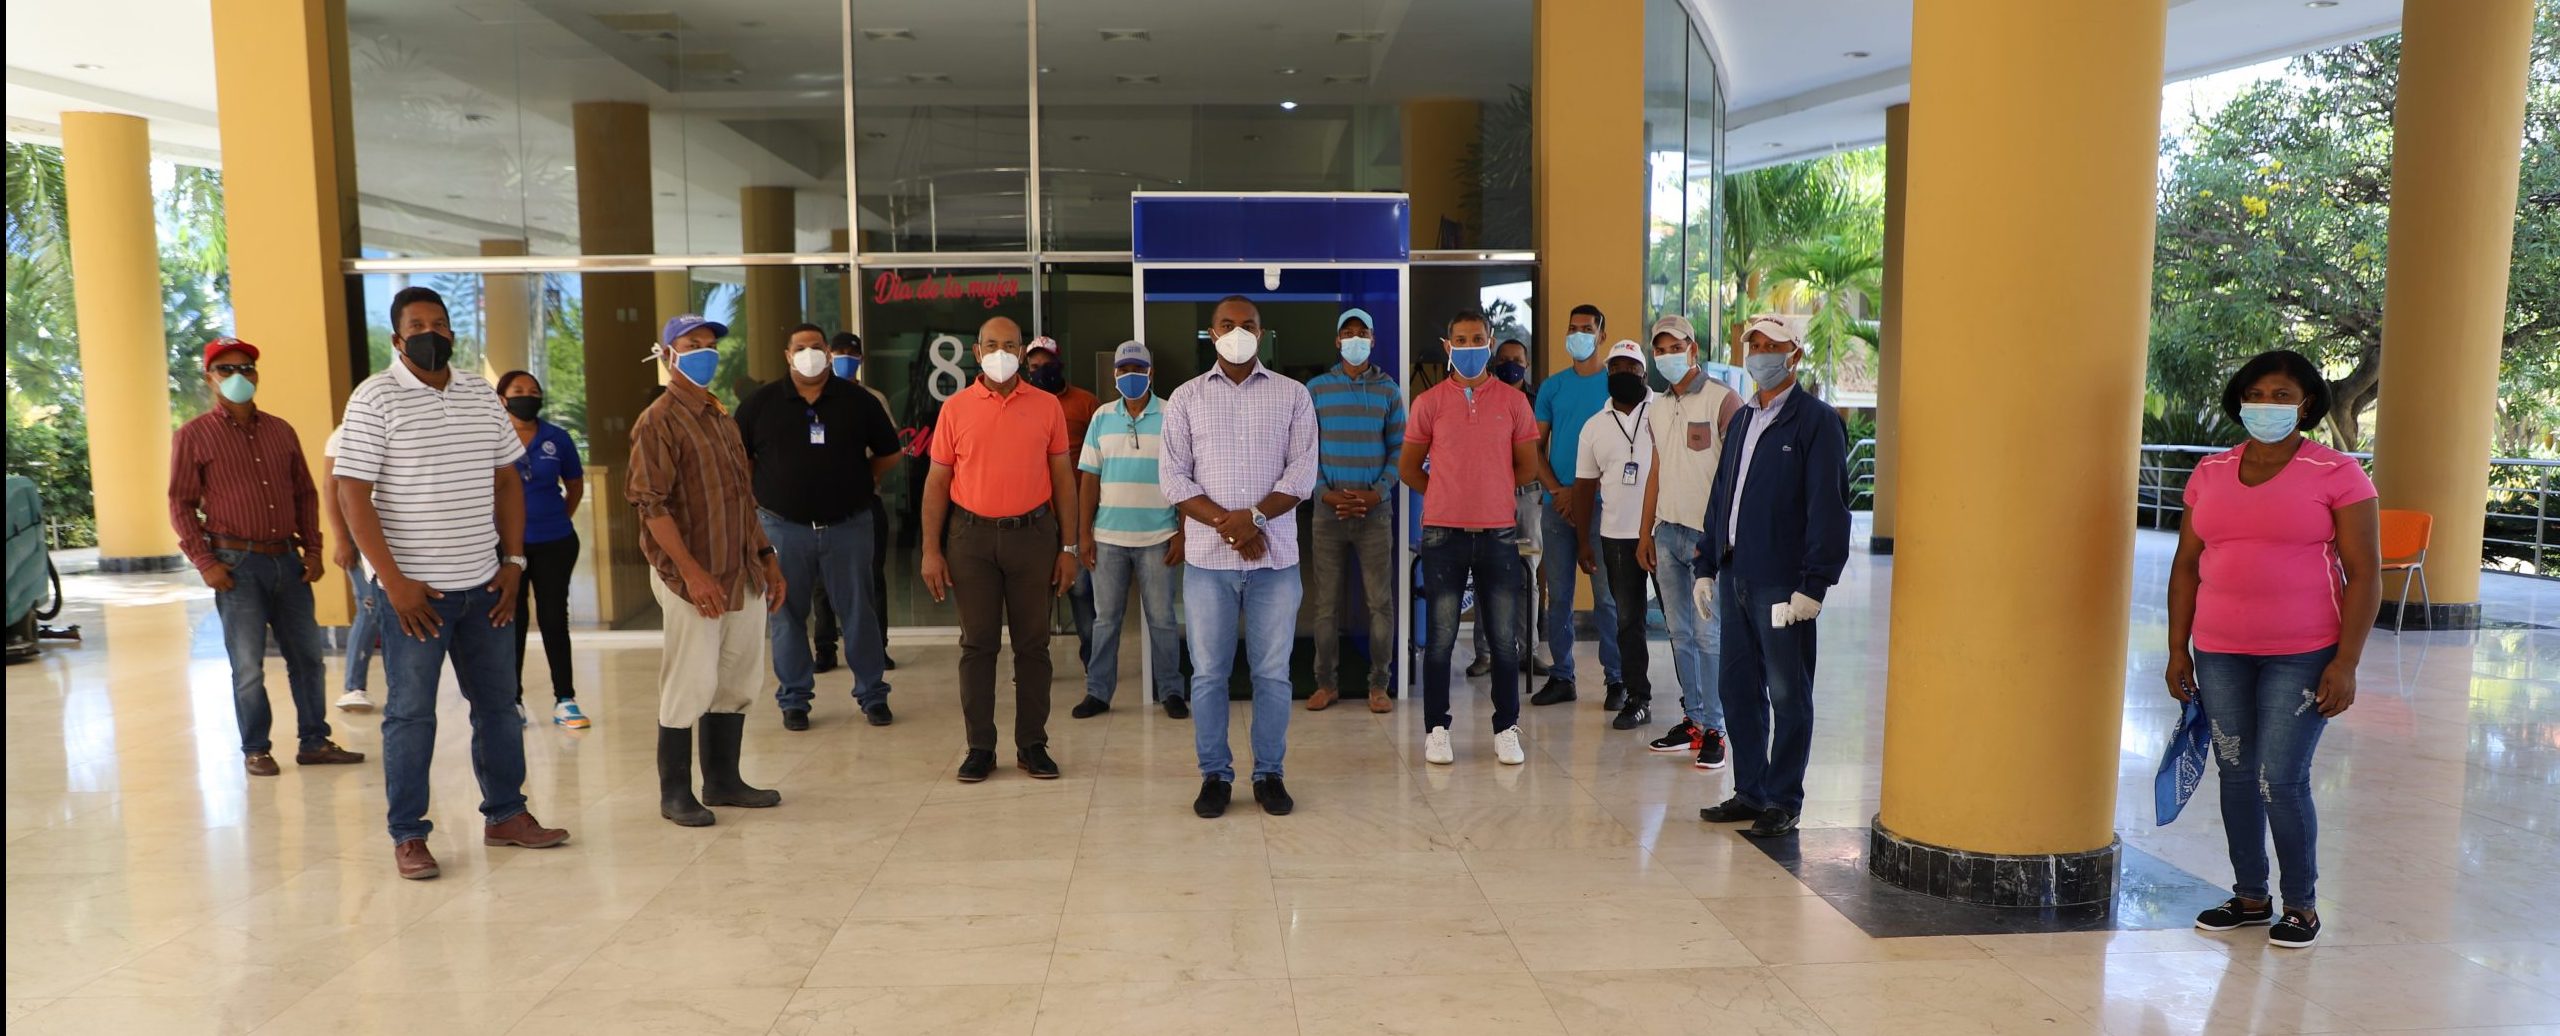 UASD San Juan instala túnel desinfectante para preservar salud de empleados ante el COVID-19